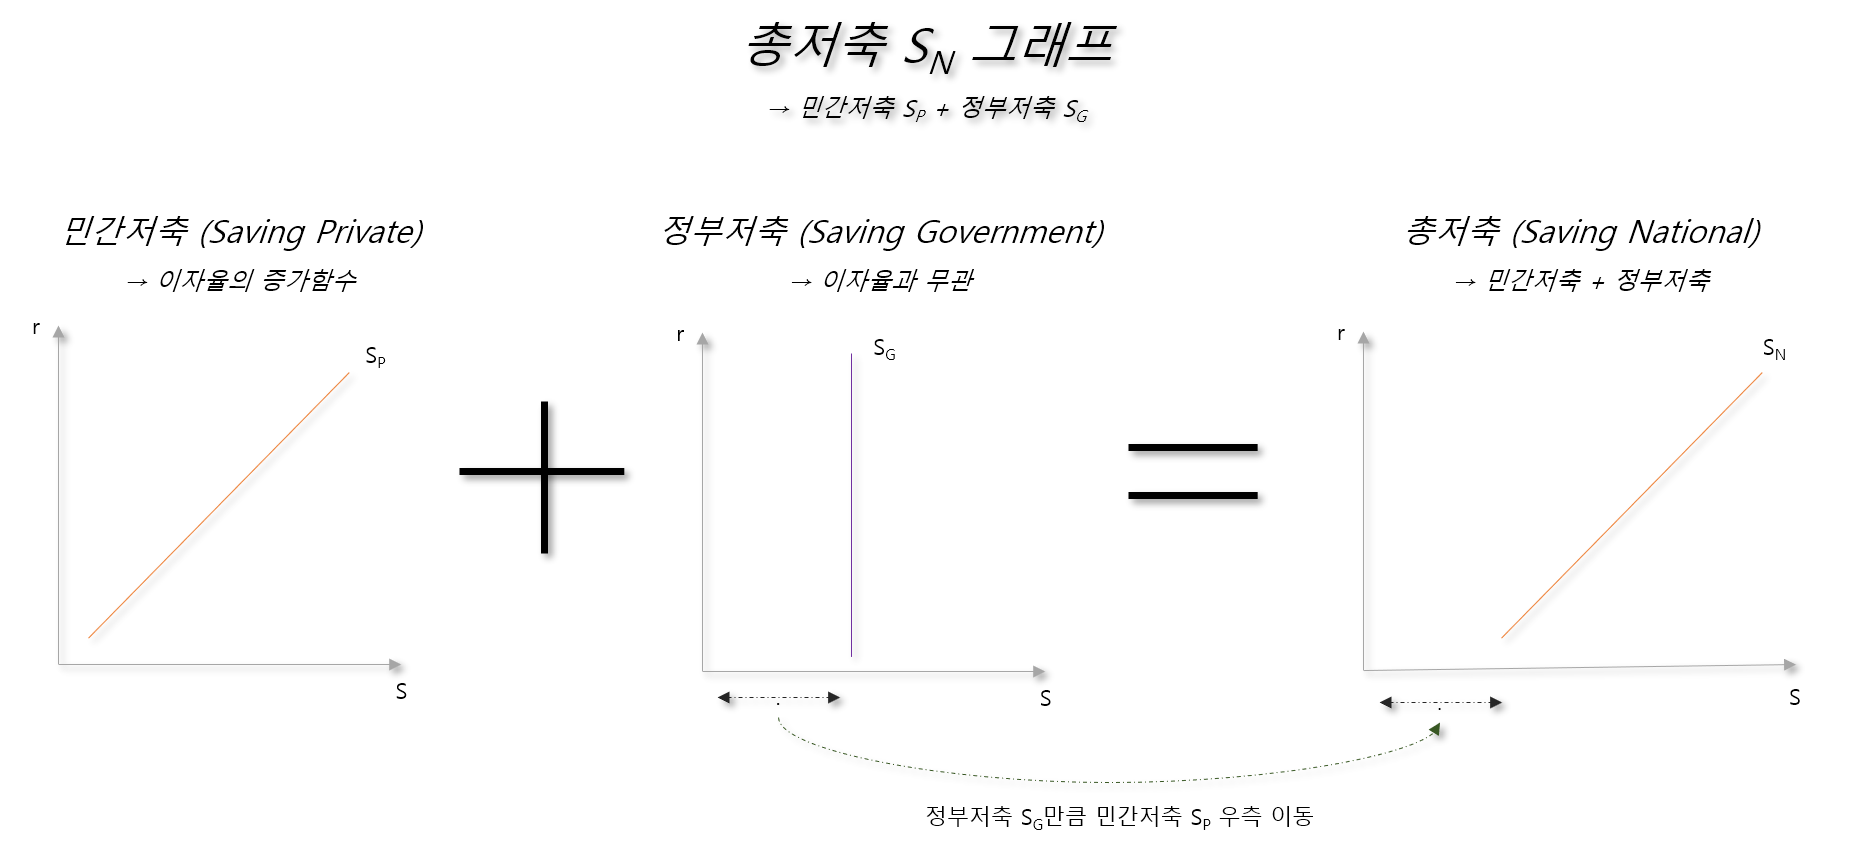 총저축 SN 그래프: 민간저축 SP + 정부저축 SG